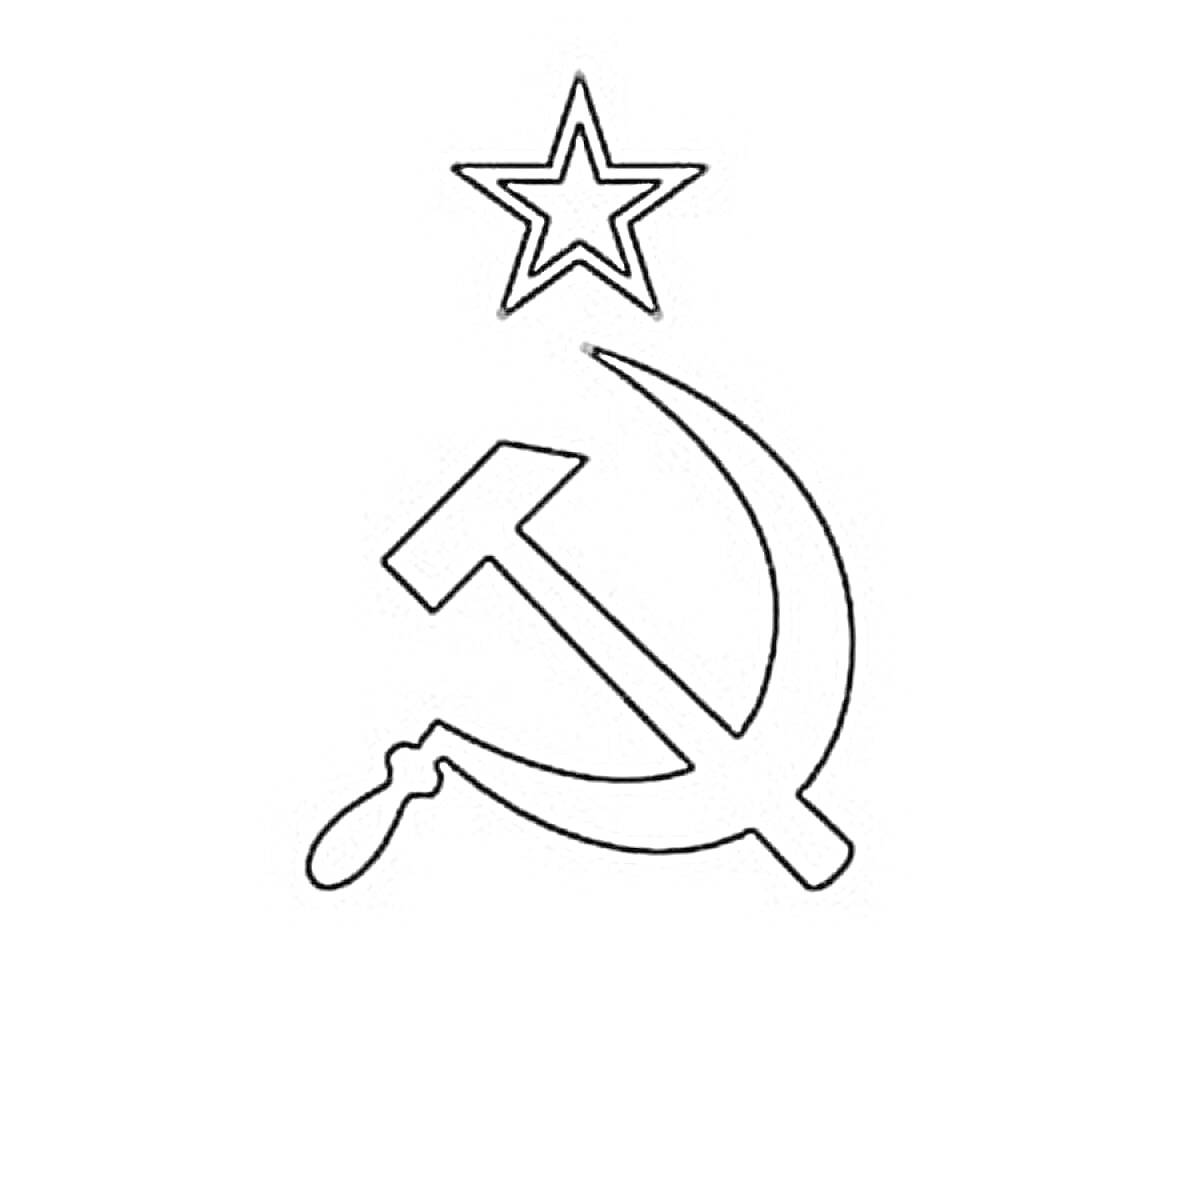 Раскраска флаг СССР с серпом, молотом и звездой